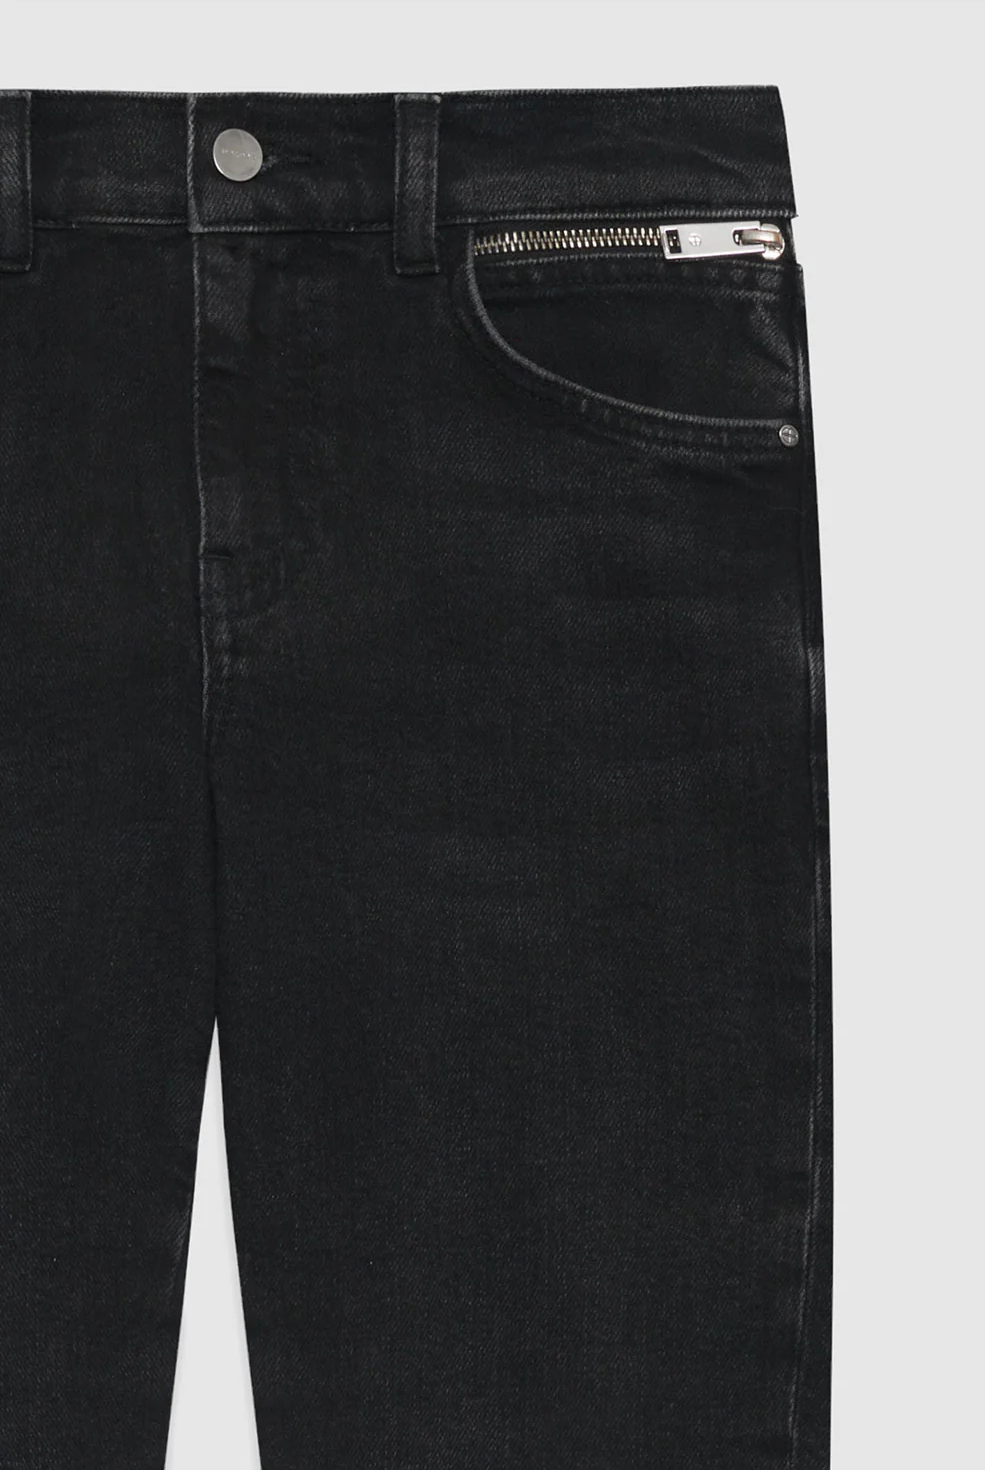 Eine schwarze Jeans mit Reißverschlüssen